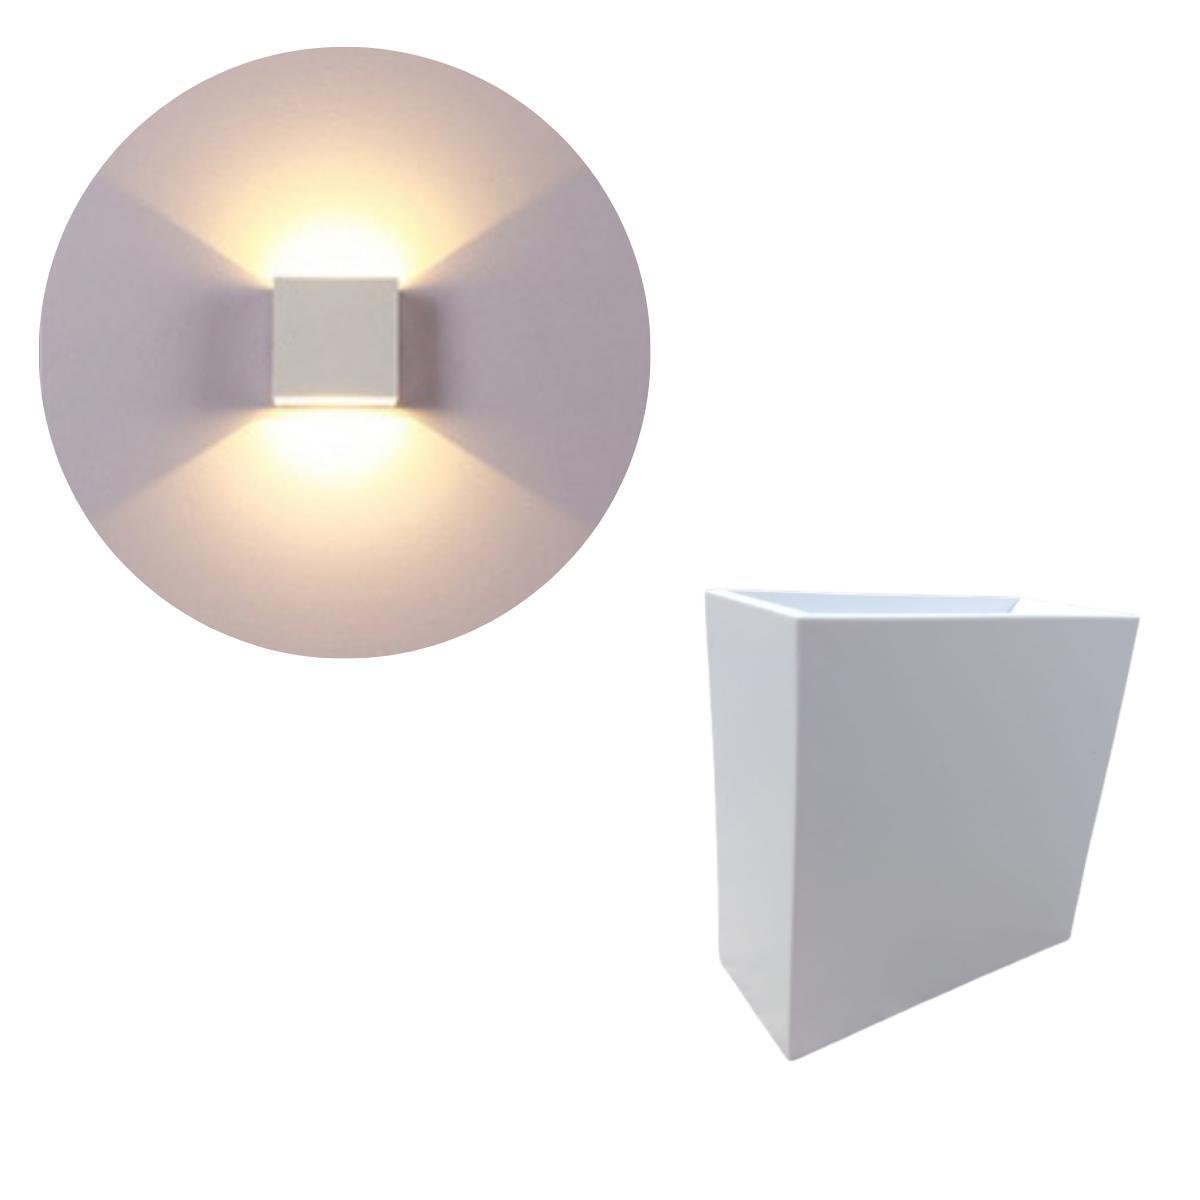 Luminária Balizador Arandela Sobrepor Quadrada Com Facho De Luz Ajustável Regulável Cima E Baixo - 1